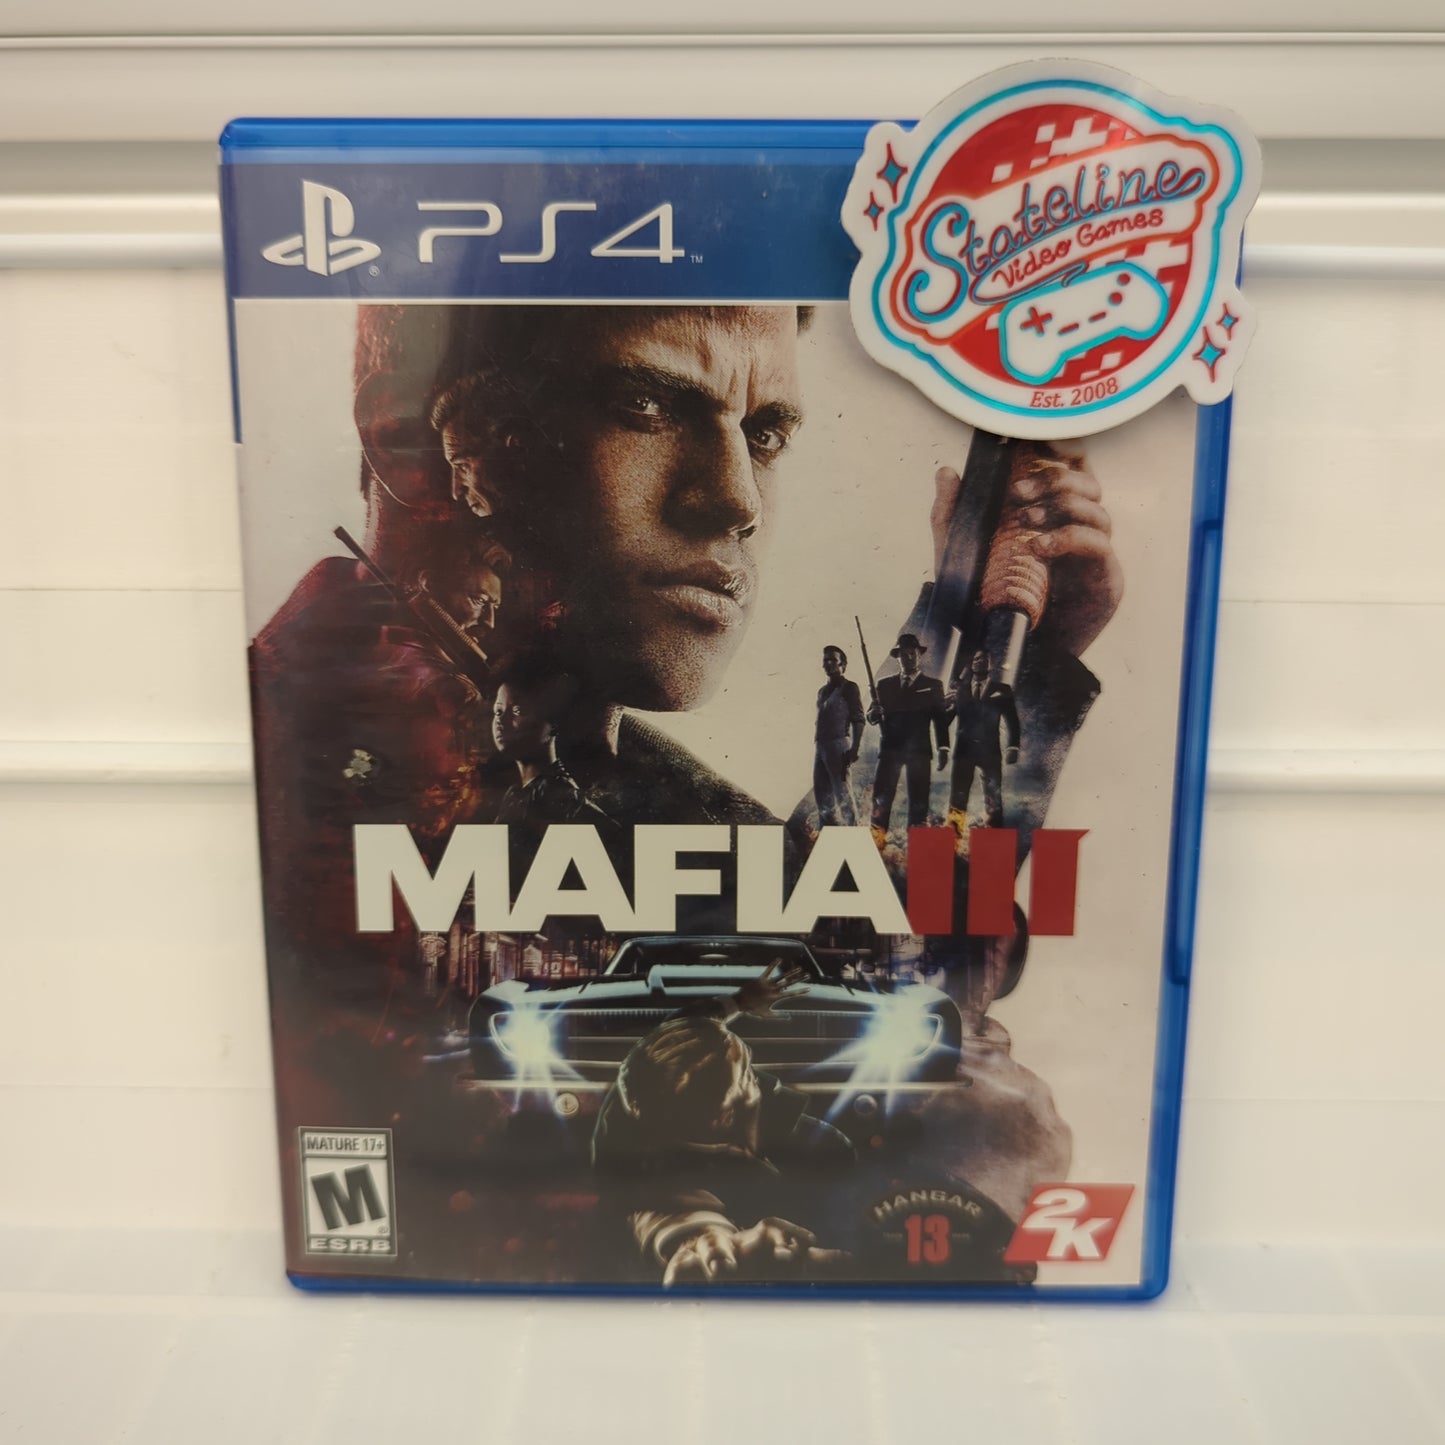 Mafia III - Playstation 4